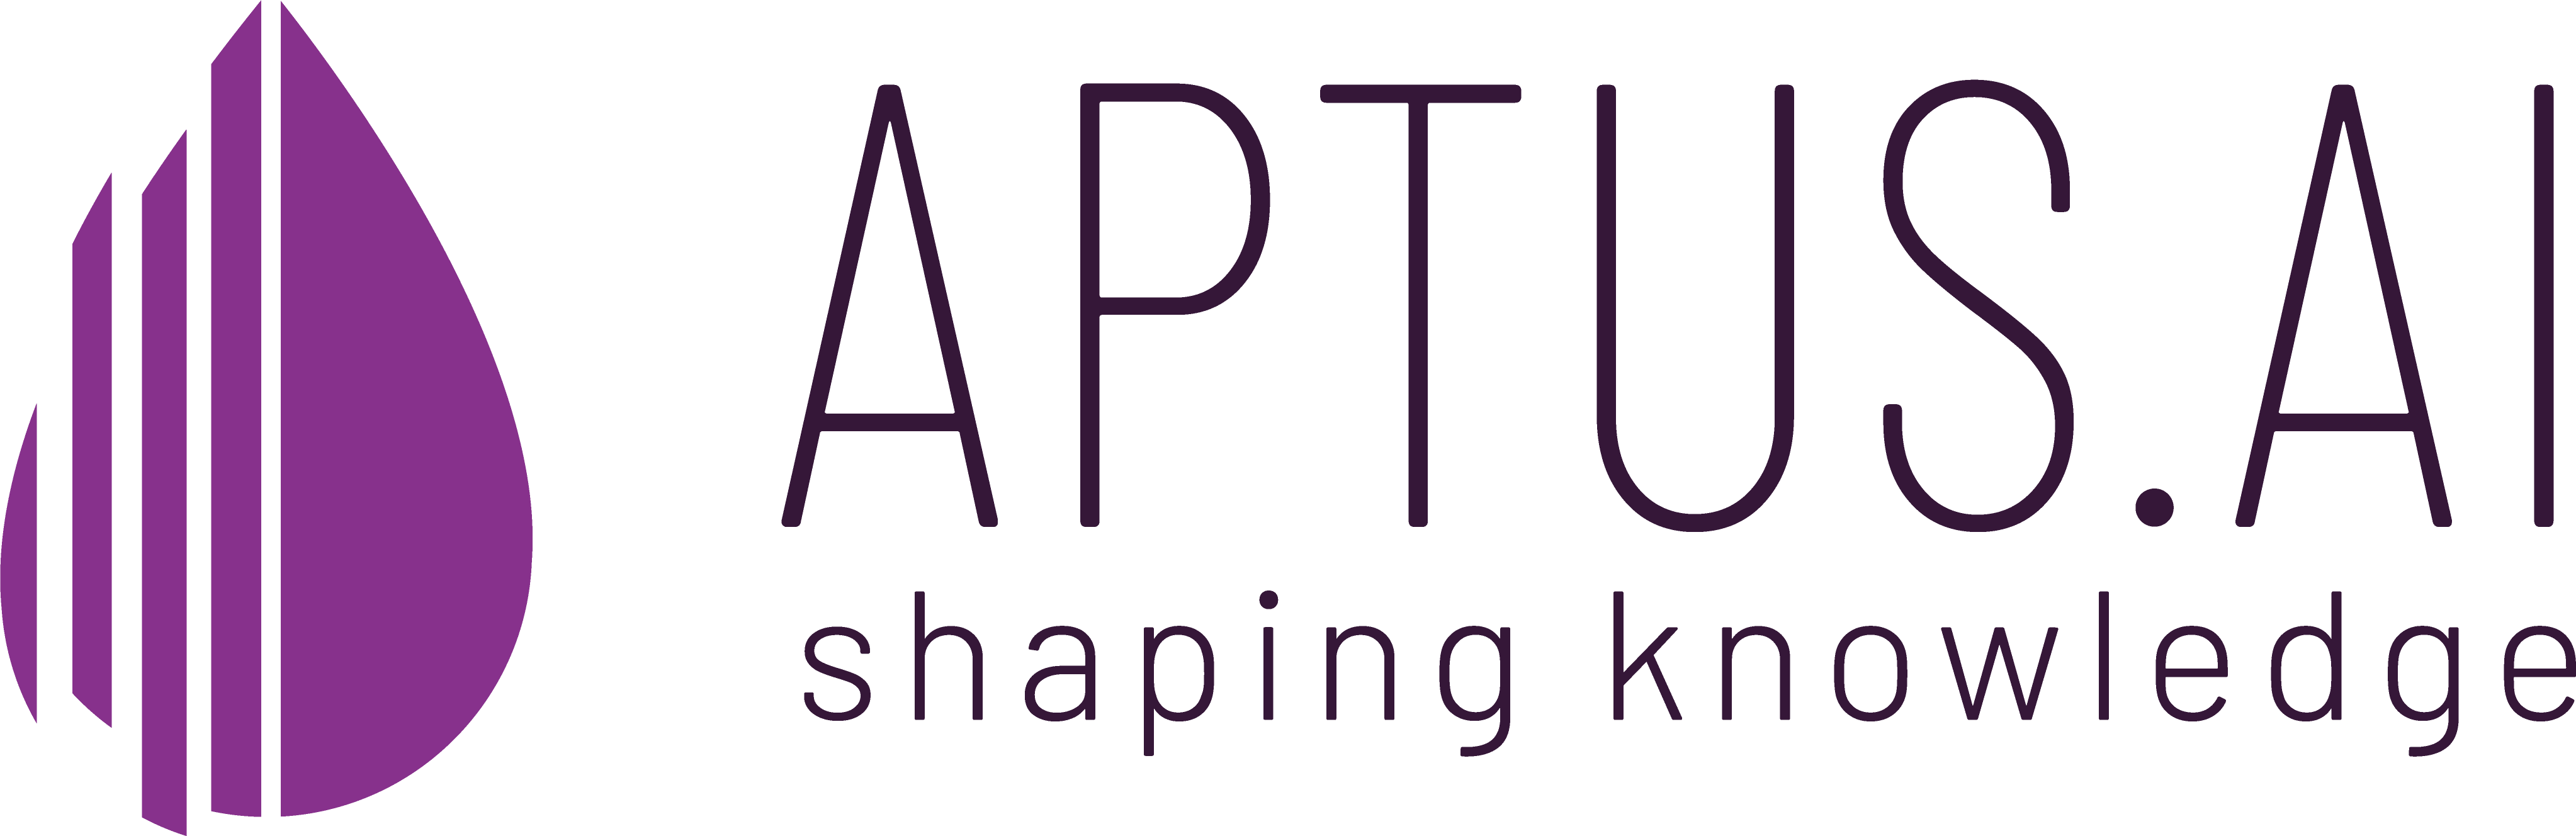 Aptus_logo